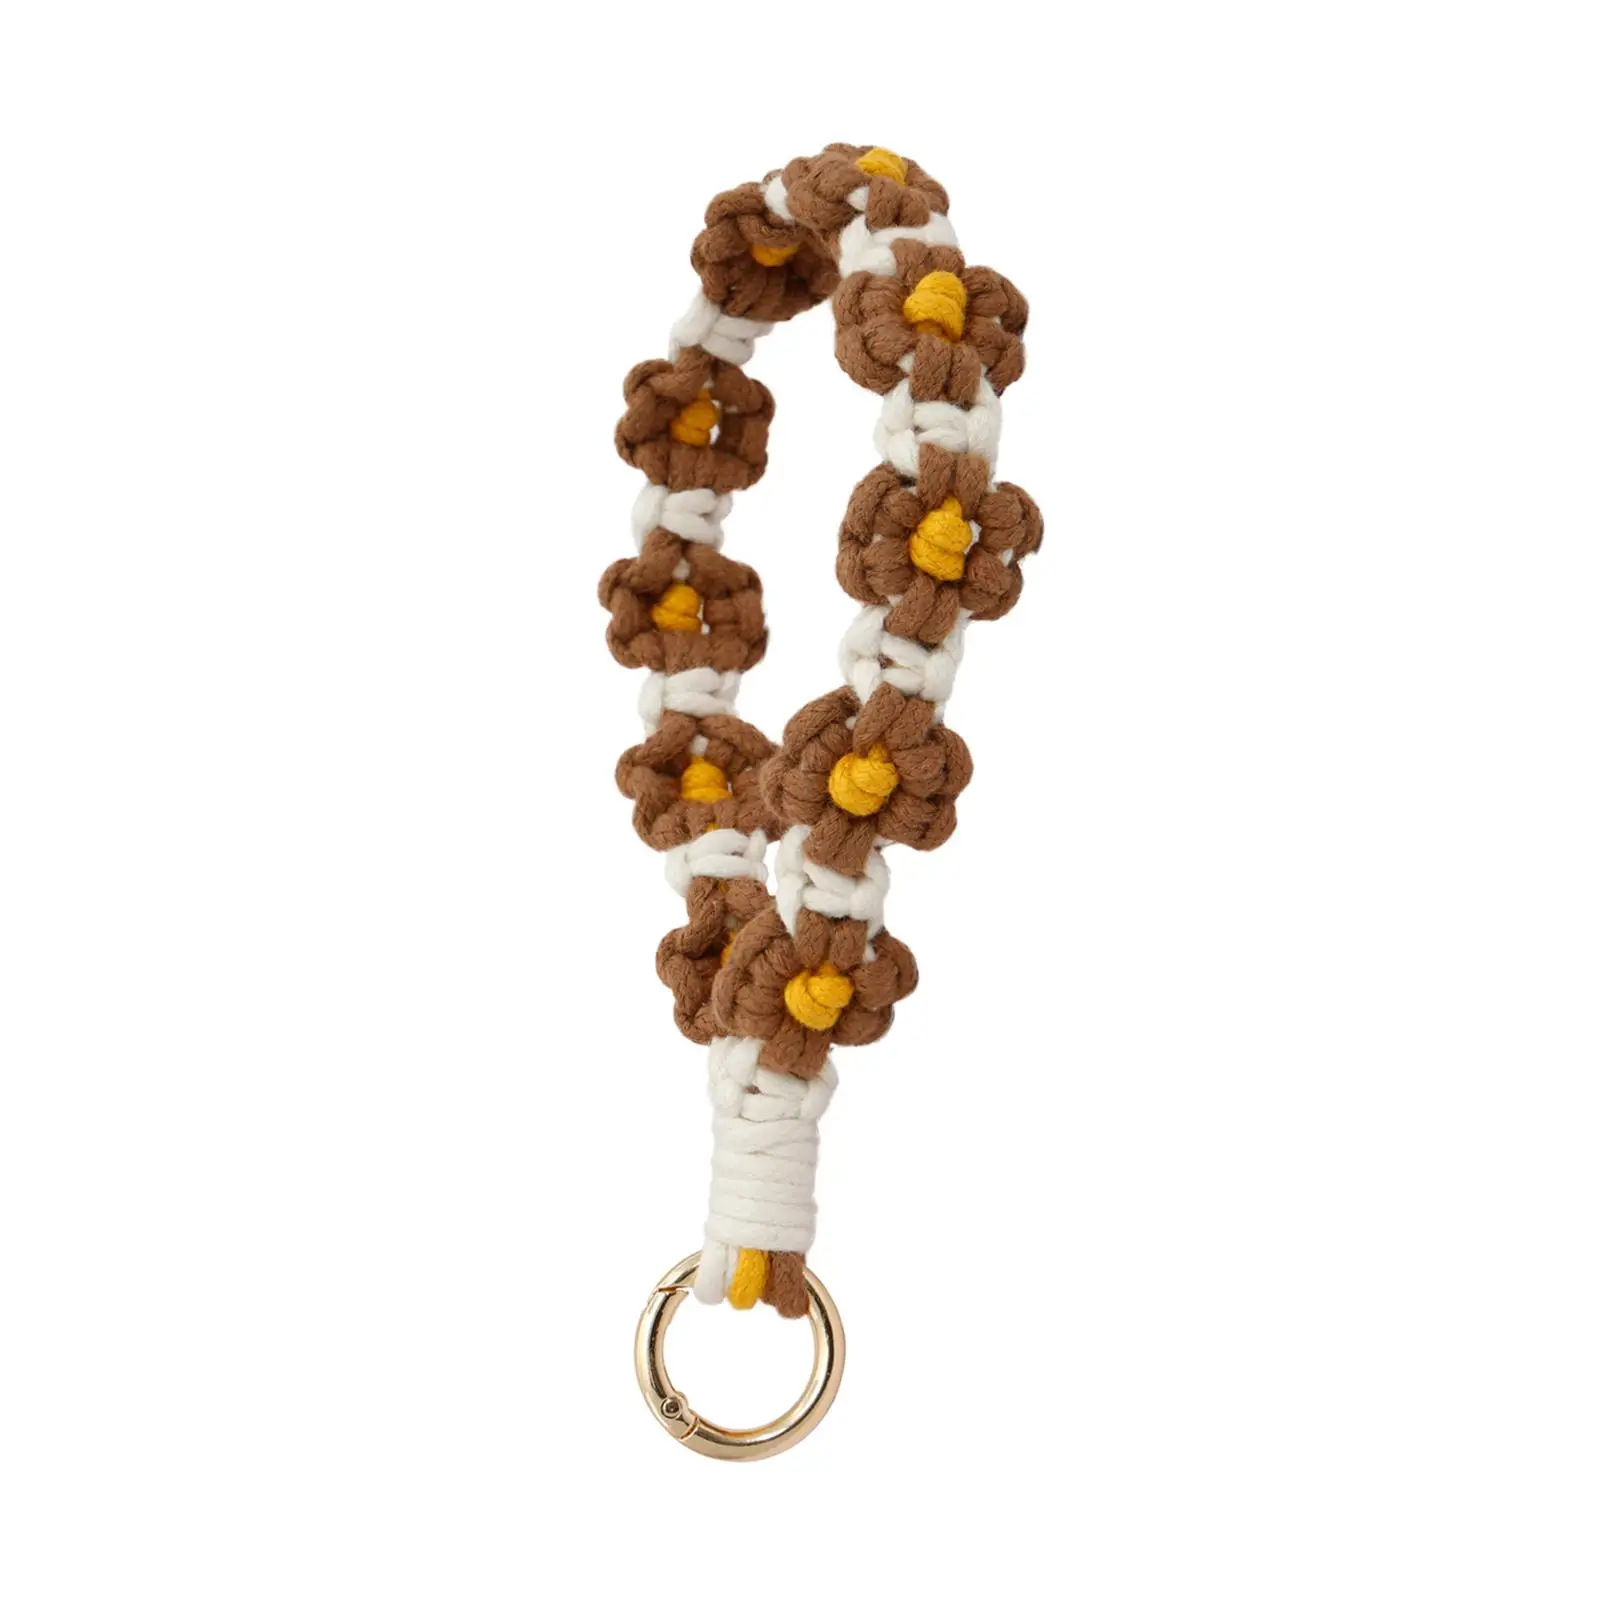 Key Chain Bracelet Boho Keychain Birthday Gift Bag Pendant Portable Women Creative Keyring Key Ring Keychain